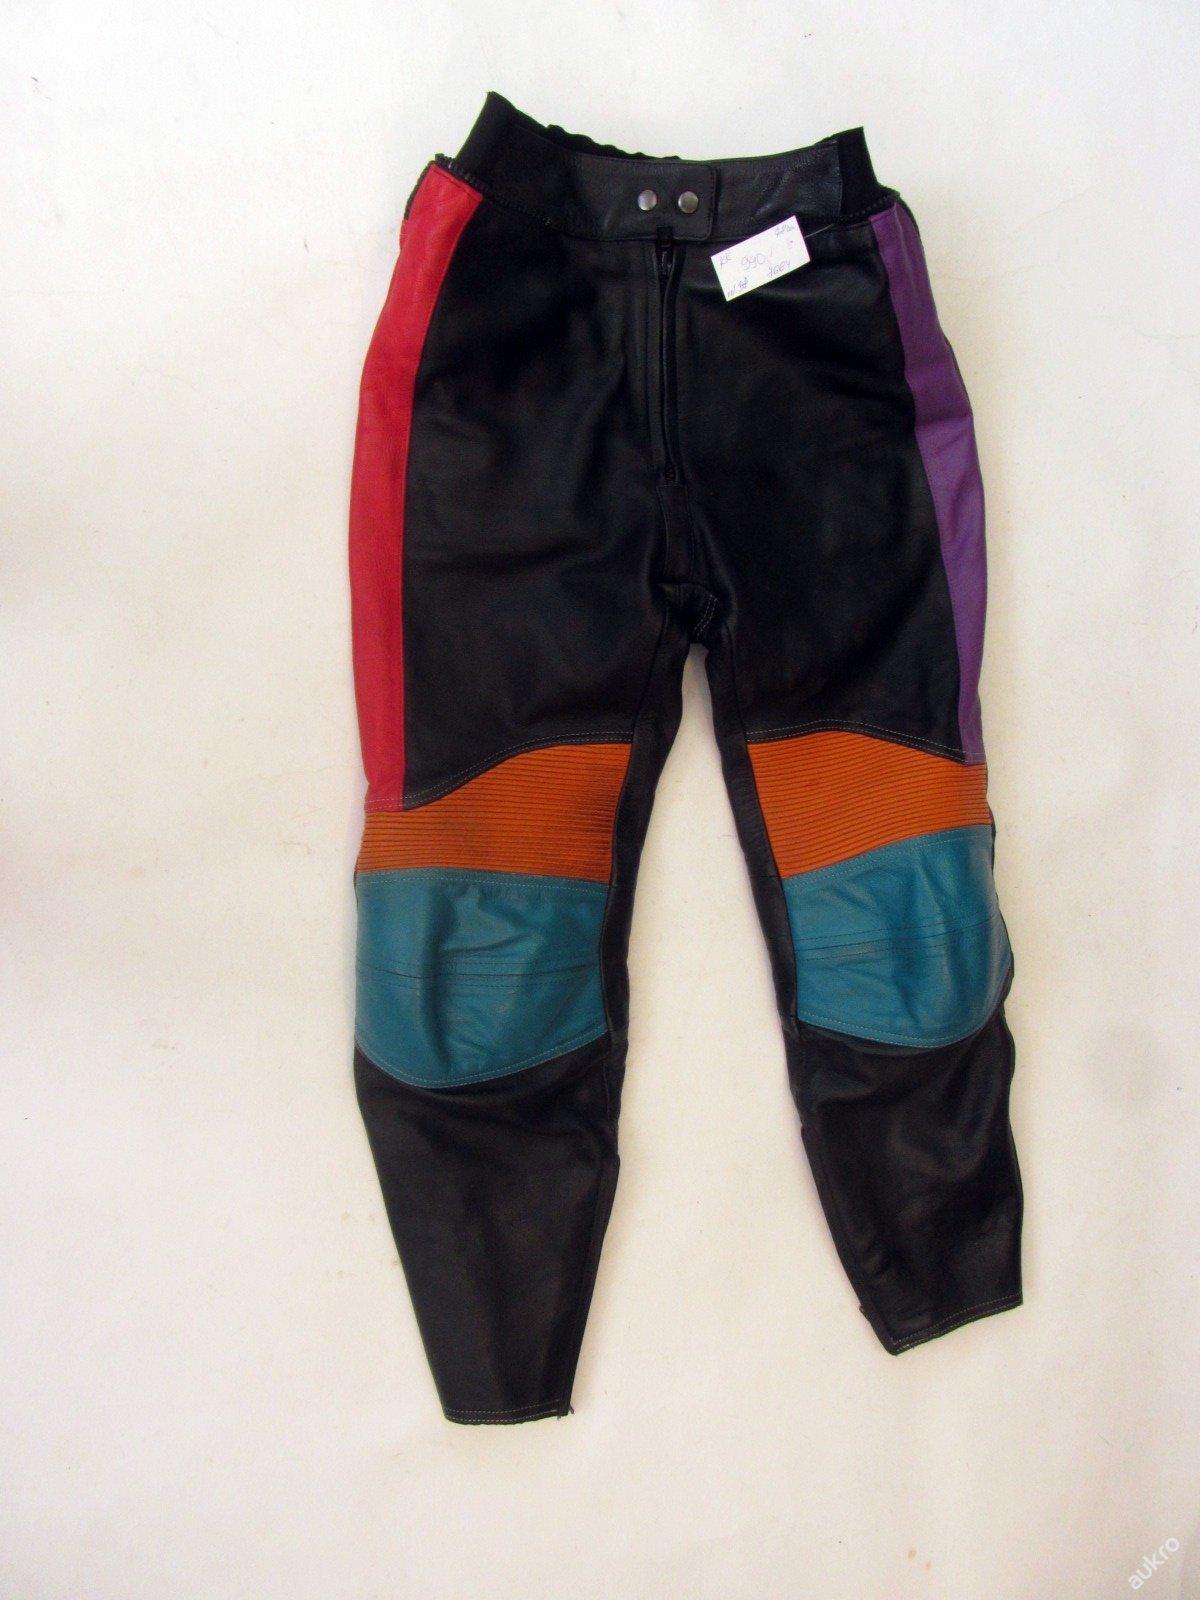 Kožené kalhoty vel. 38 - obvod pasu: 78 cm - Náhradní díly a příslušenství pro motocykly